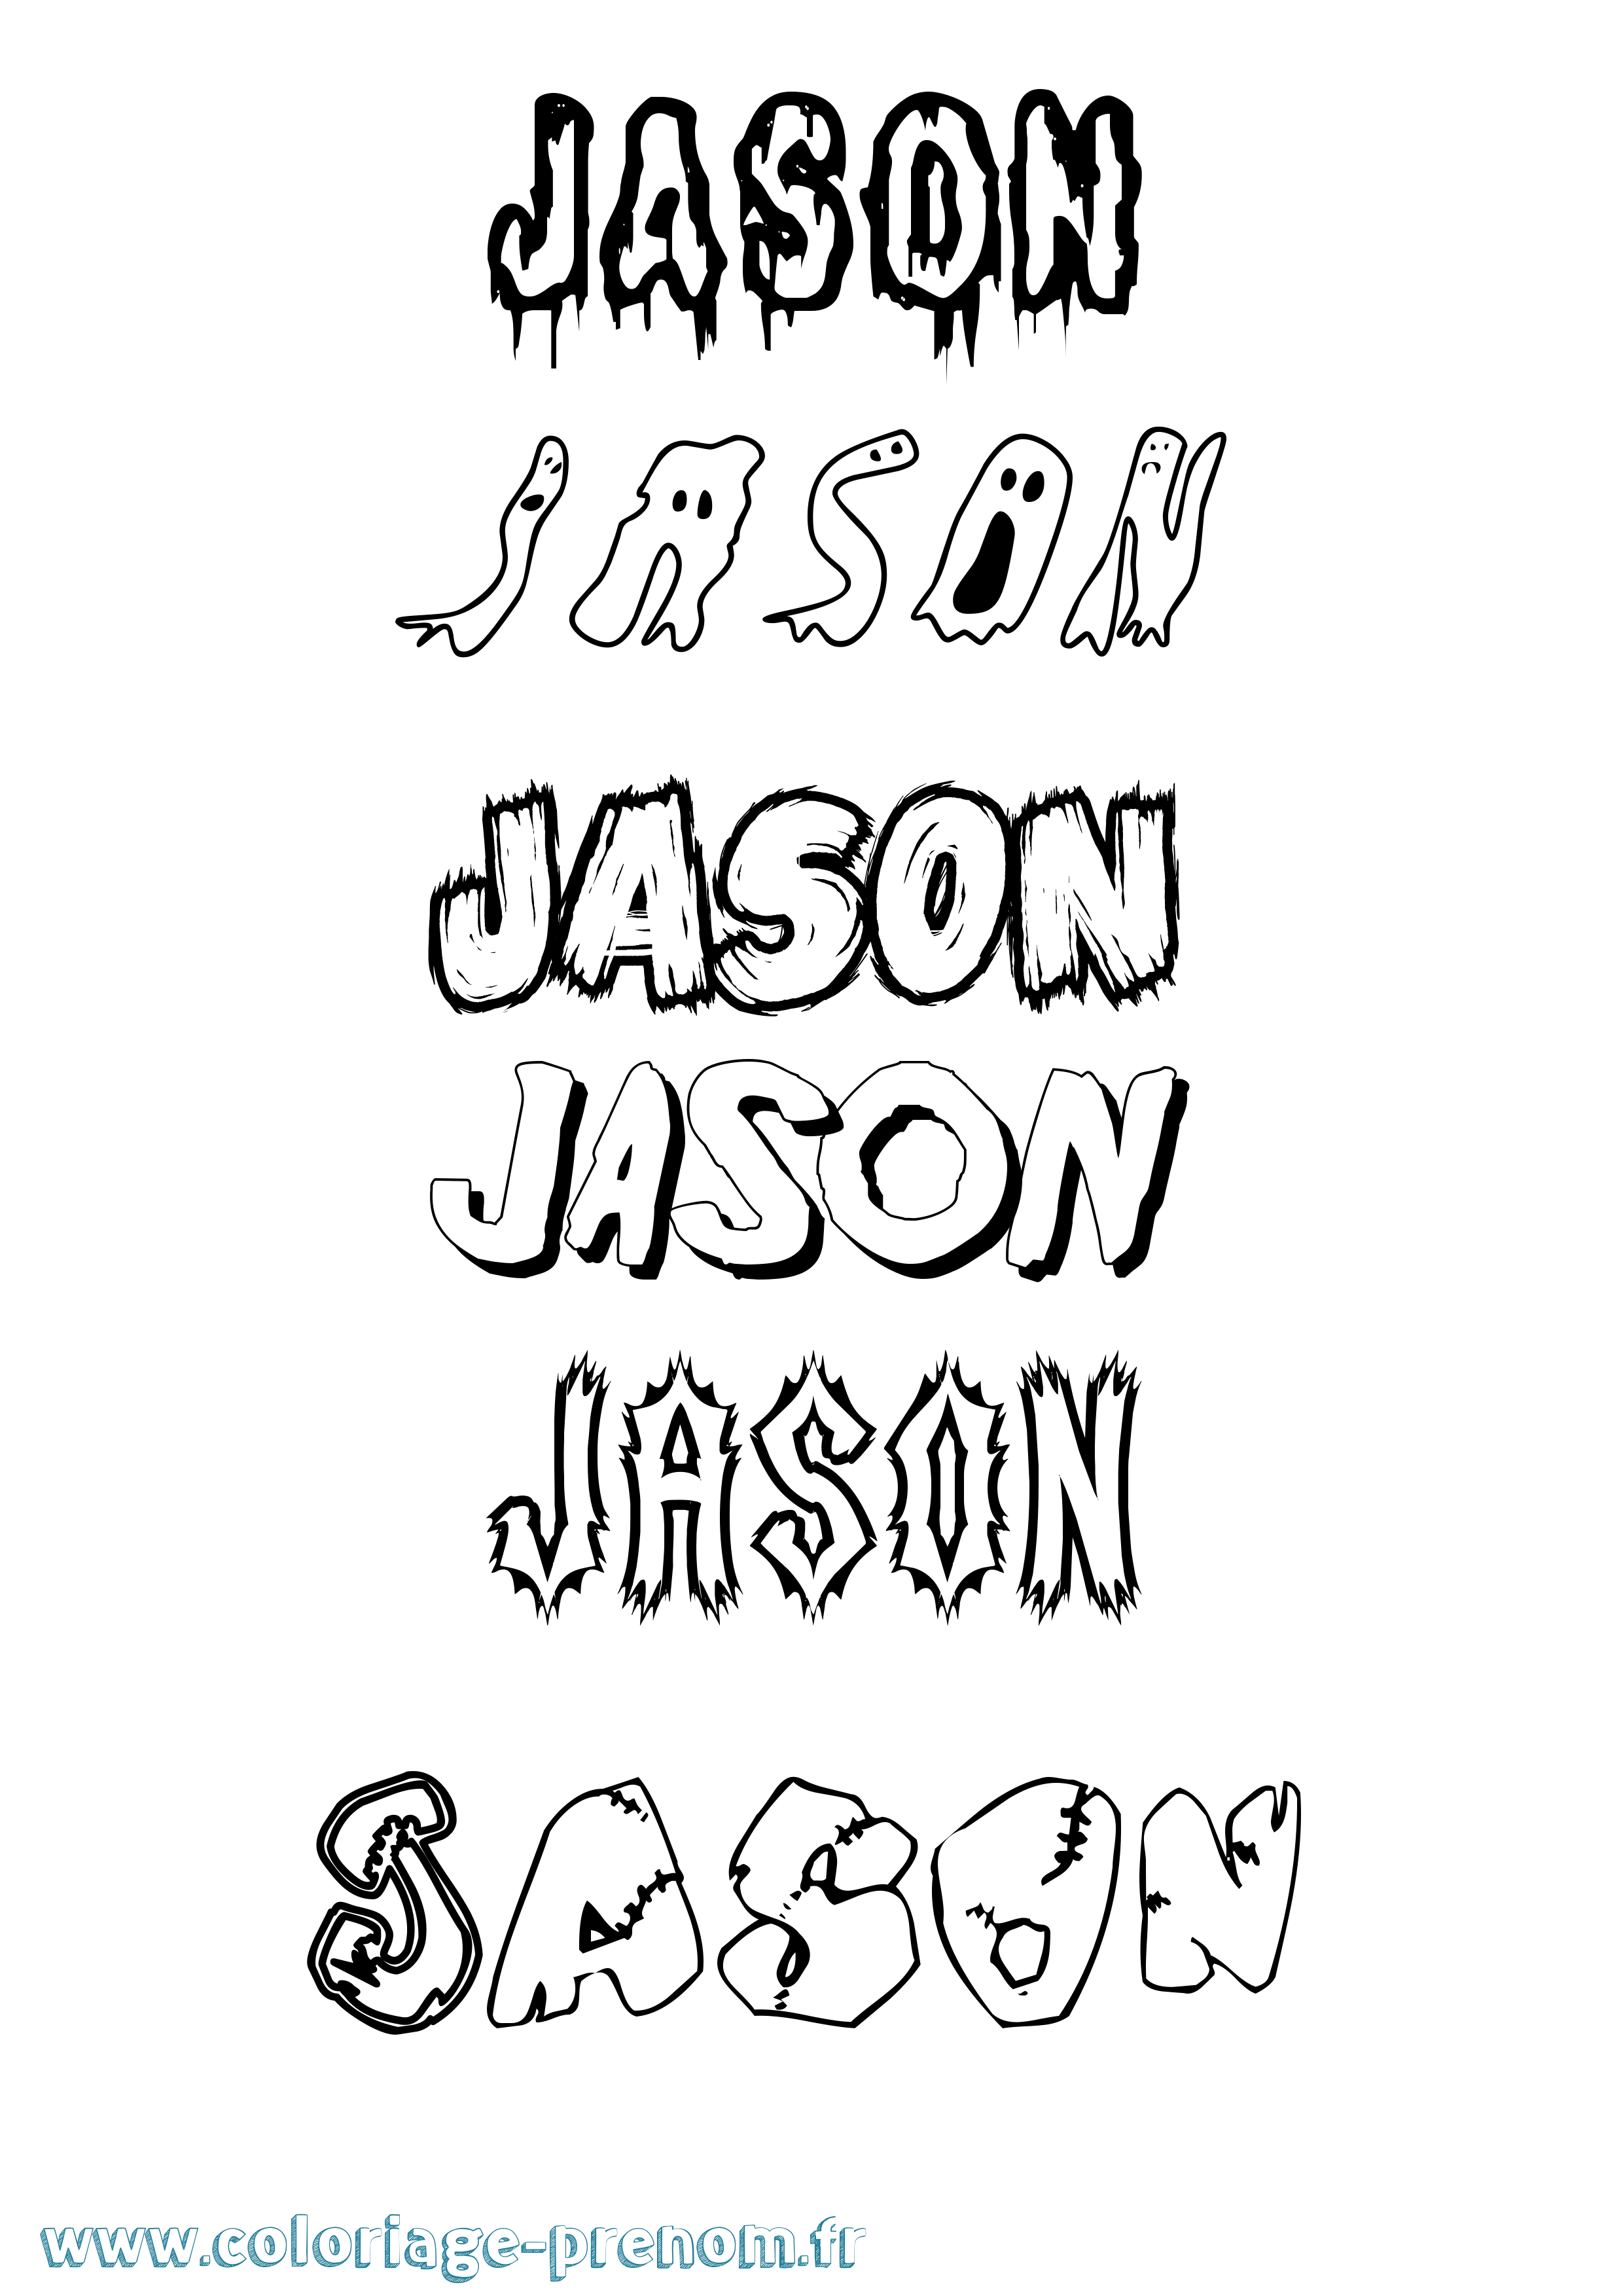 Coloriage prénom Jason Frisson